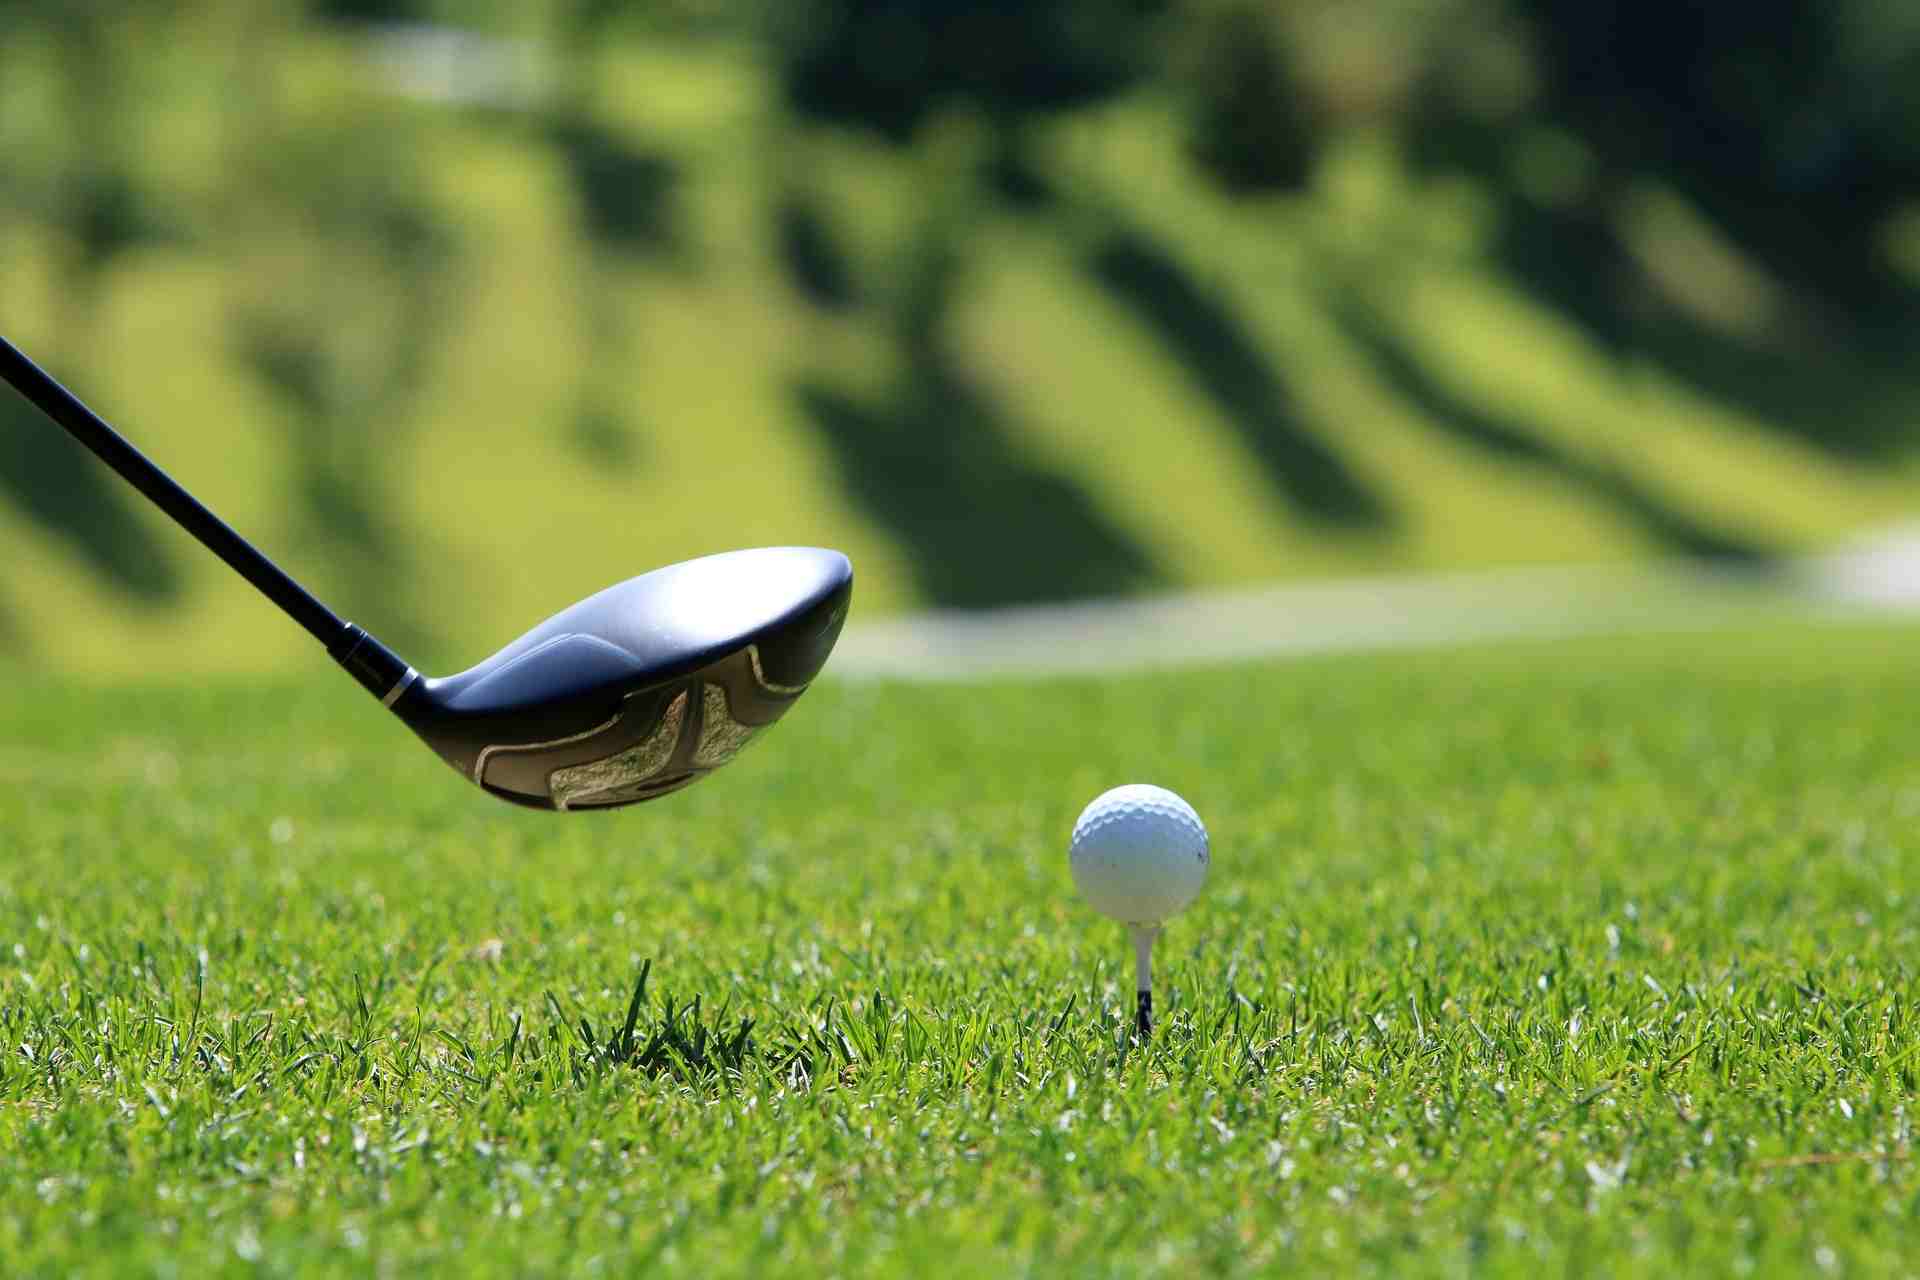 Golf Travel Week In Hanoi From September To October